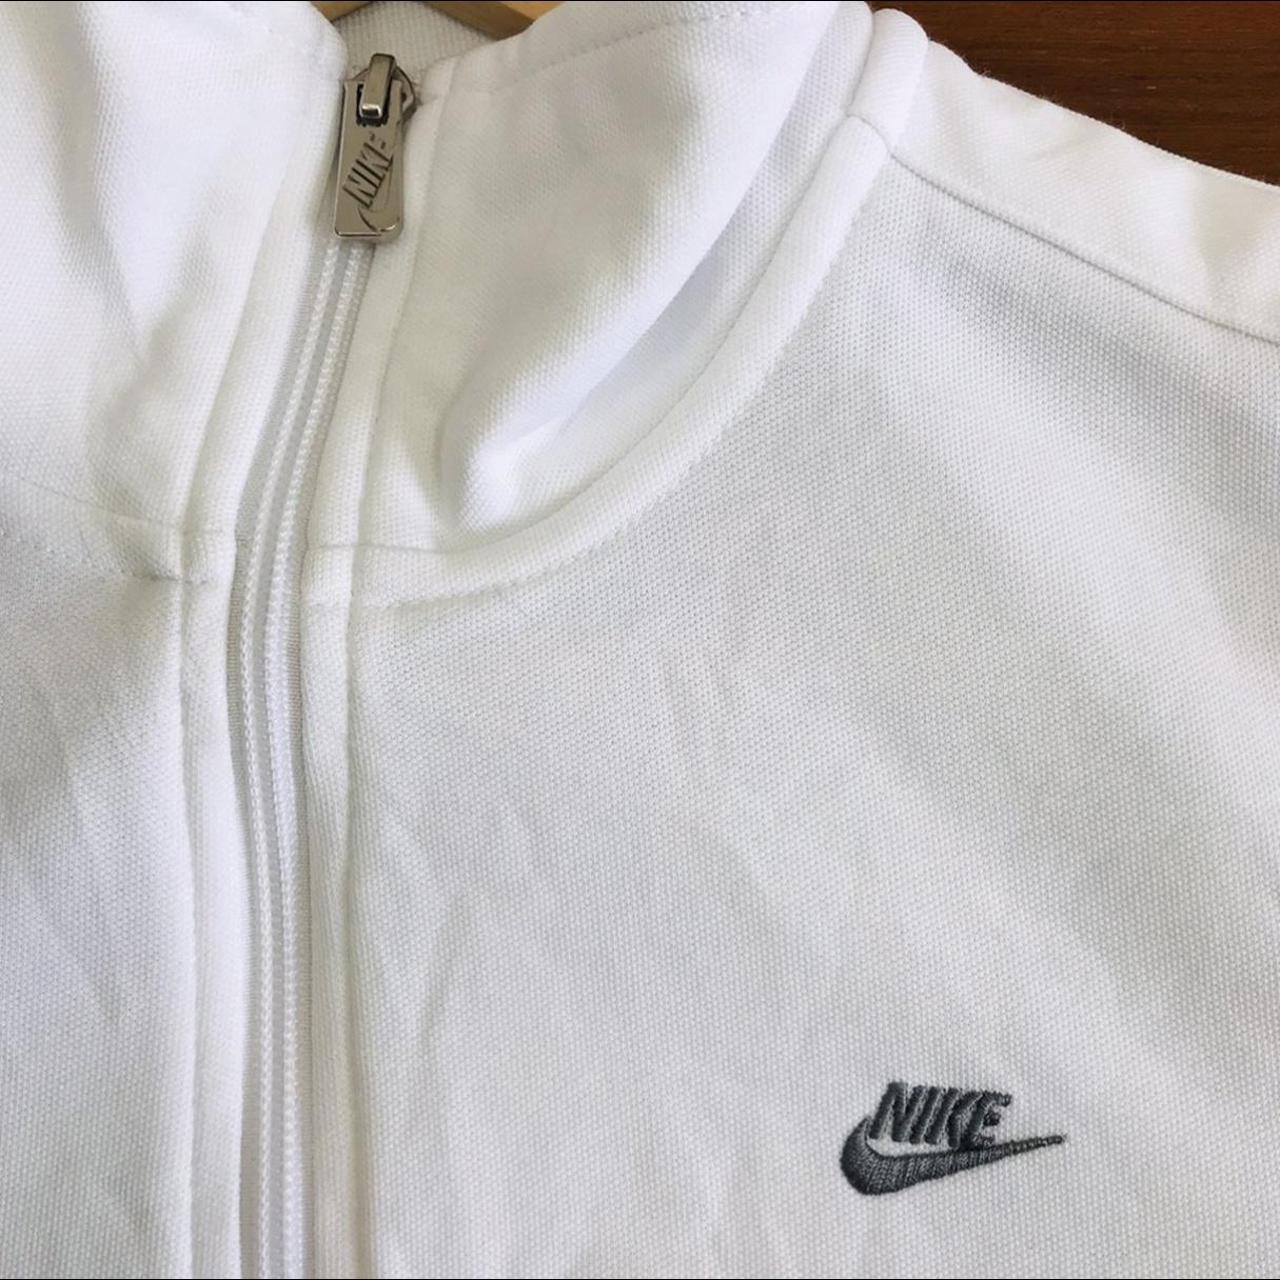 White Nike 90s style track jacket/ zip up hoodie. In... - Depop